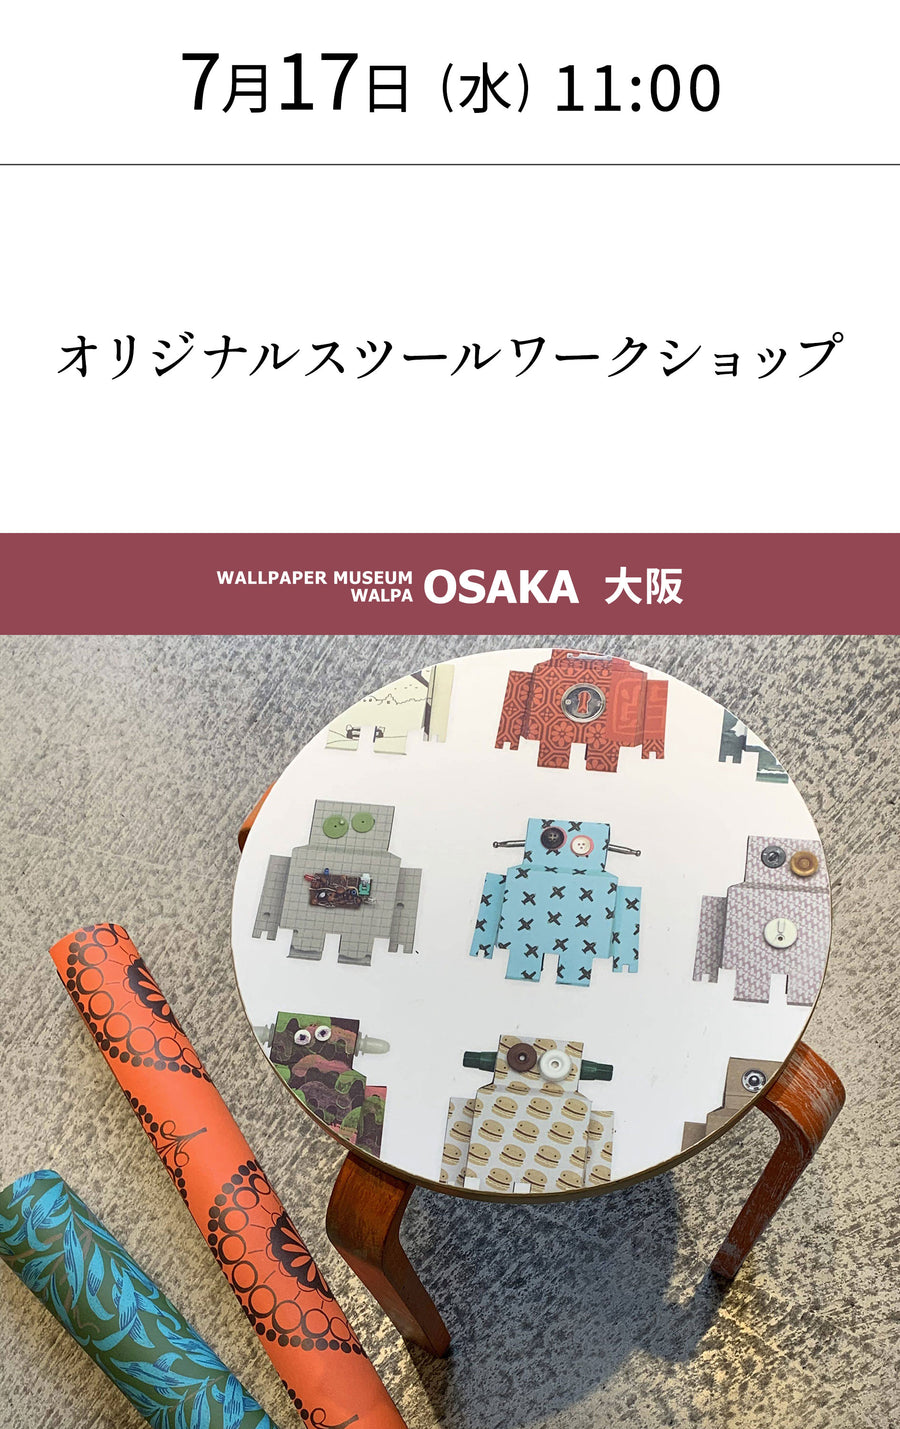 7月17日(水) 11:00～WALLPAPER MUSEUM WALPA / OSAKA ワークショップ「オリジナルスツールワークショップ」